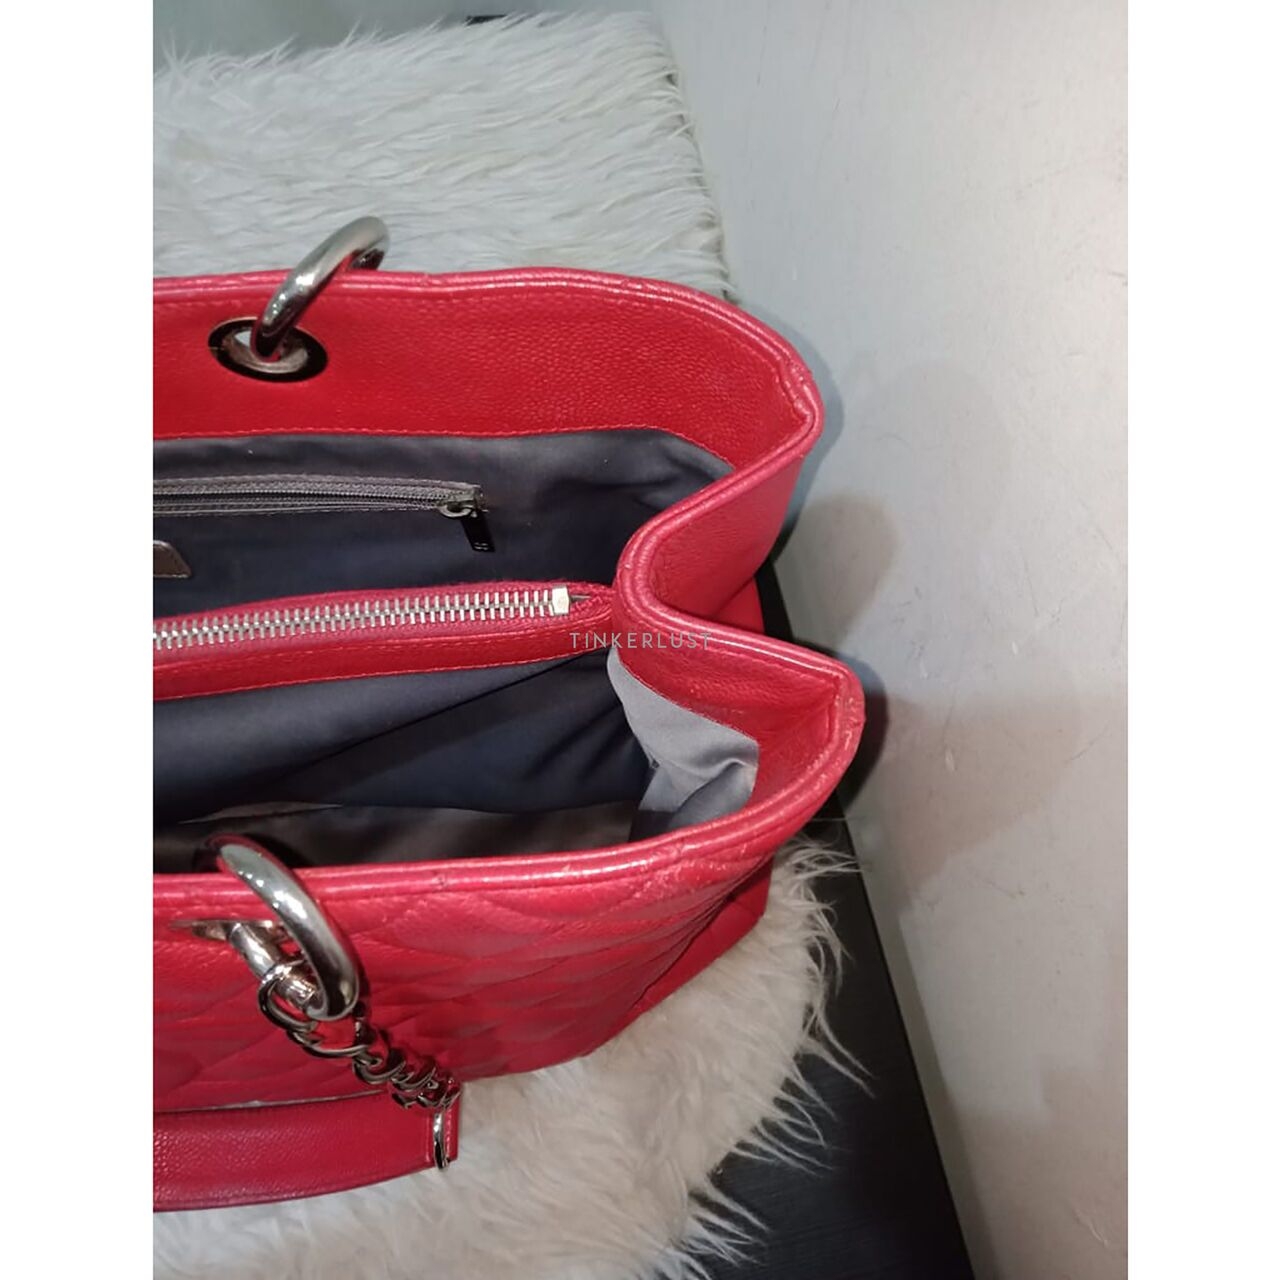 Chanel GST Red Caviar #15 SHW Tote Bag